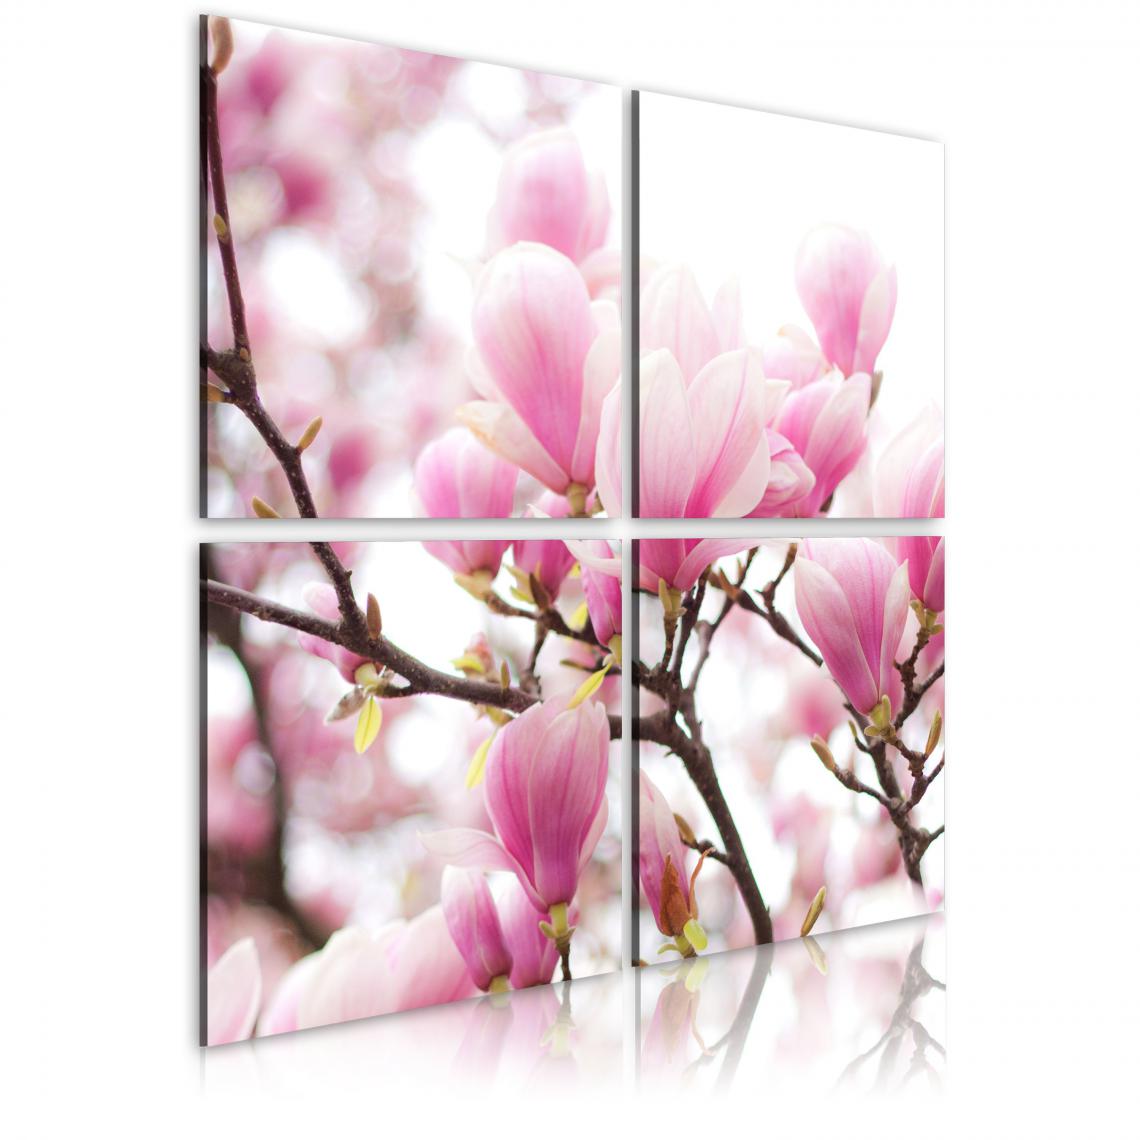 Decoshop26 - Tableau sur toile en 4 panneaux décoration murale image imprimée cadre en bois à suspendre Magnolia fleurissante 60x60 cm 11_0005419 - Tableaux, peintures